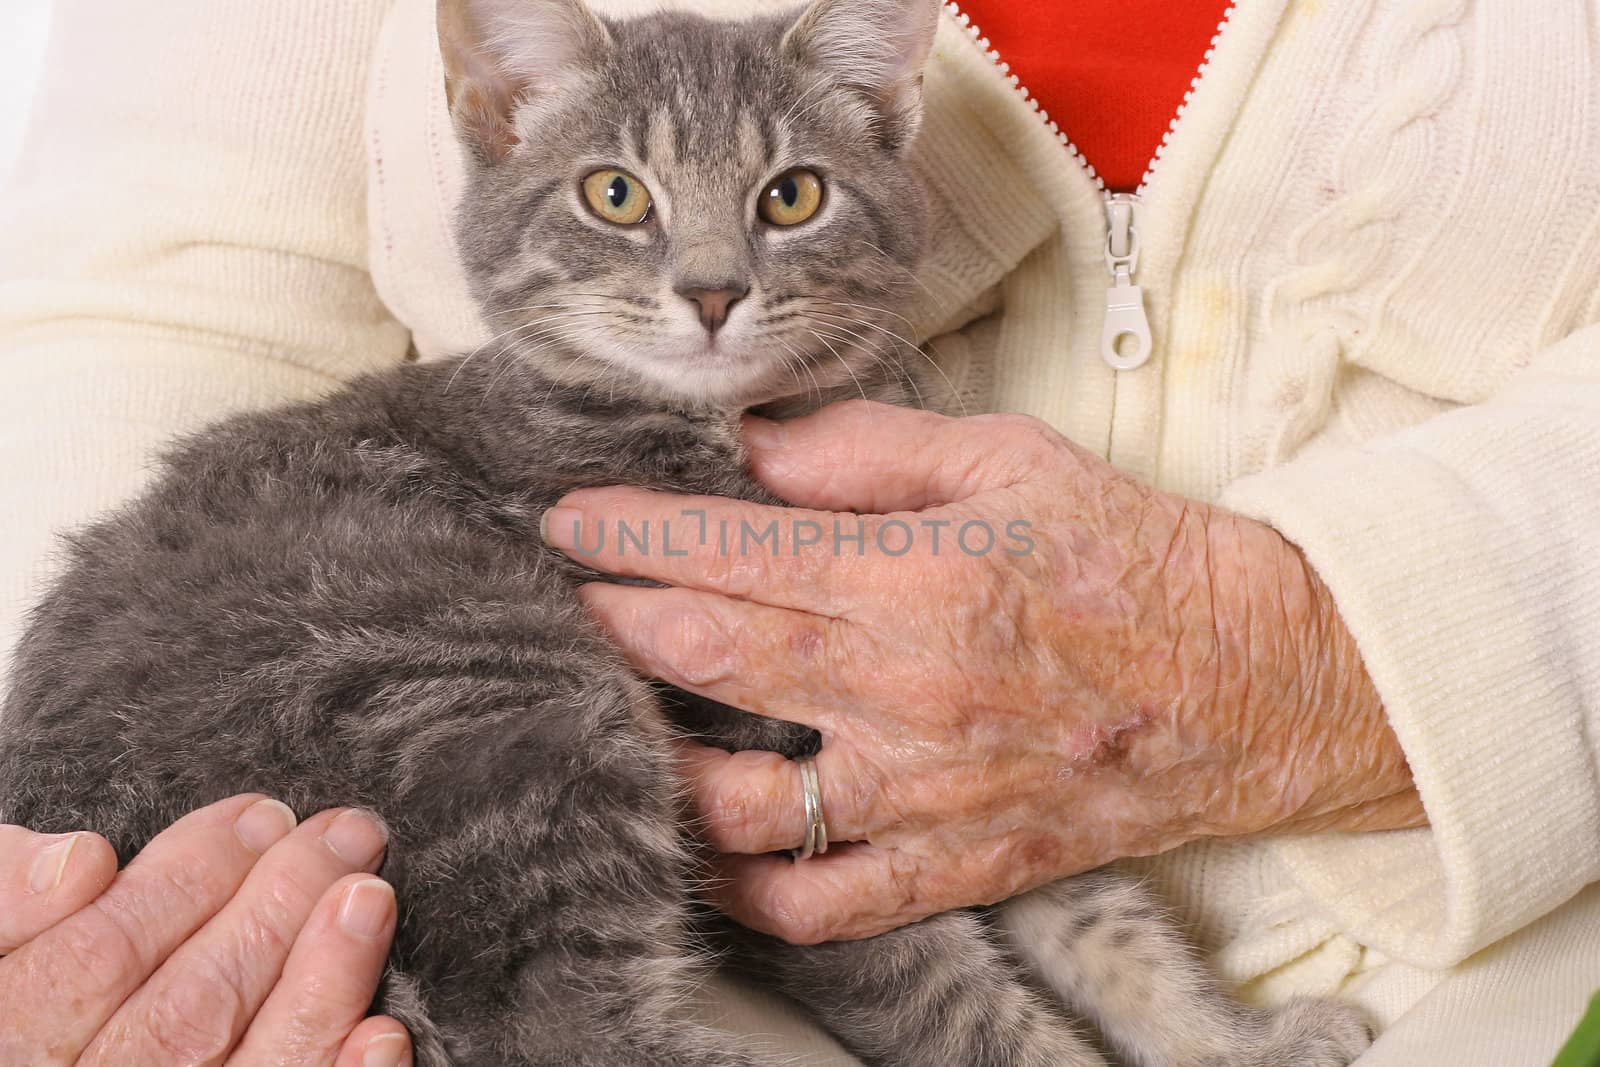 elderly womans hands holding a kitten